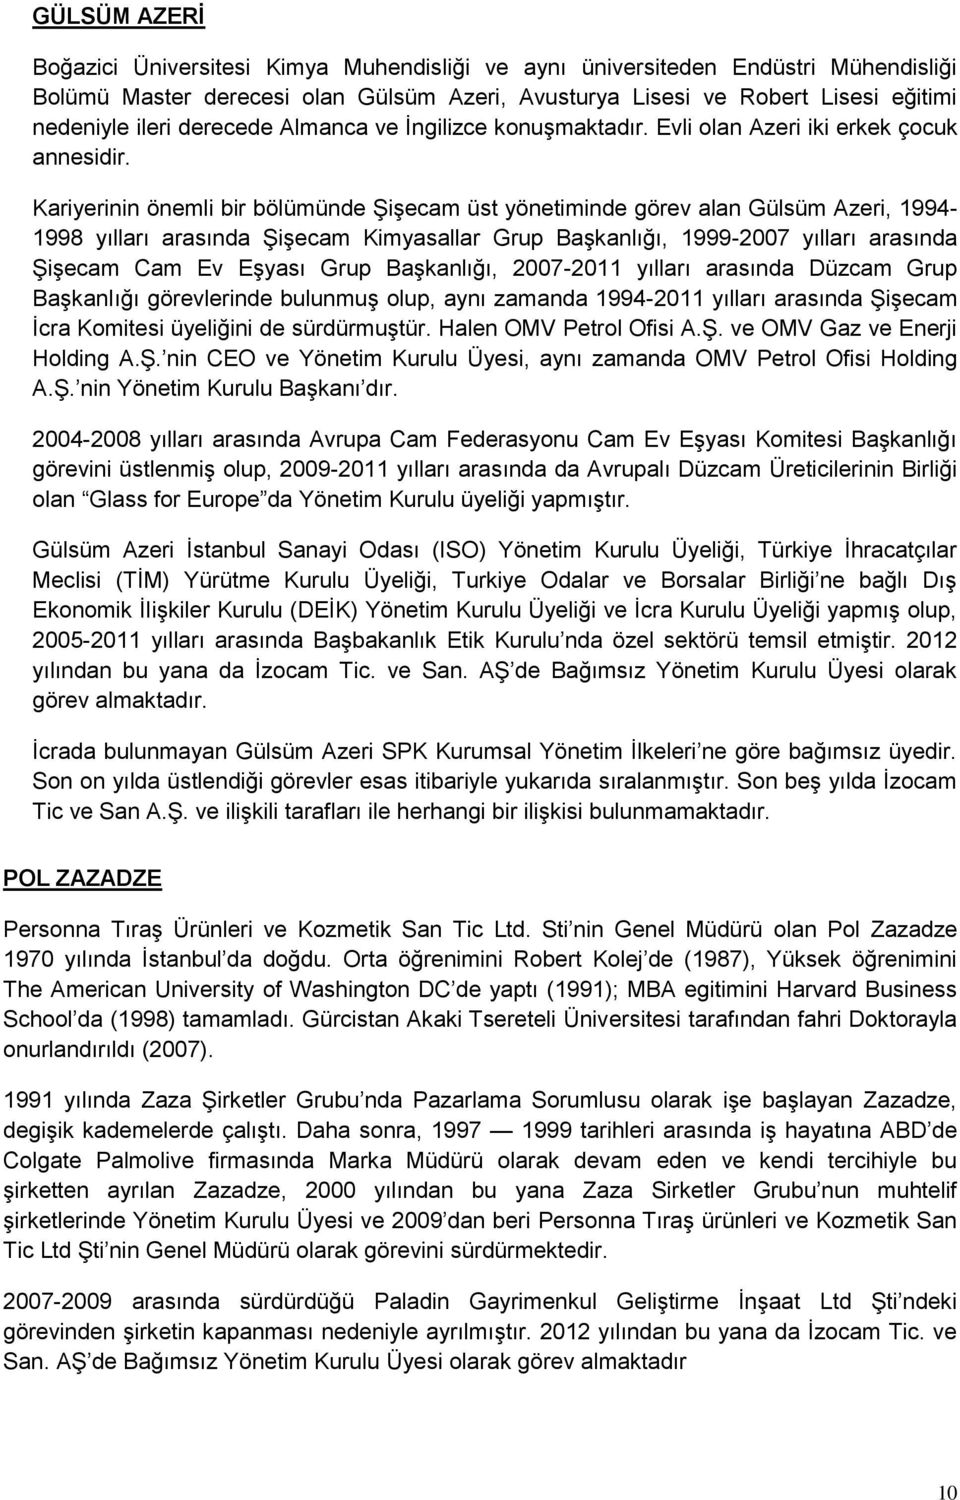 Kariyerinin önemli bir bölümünde Şişecam üst yönetiminde görev alan Gülsüm Azeri, 1994-1998 yılları arasında Şişecam Kimyasallar Grup Başkanlığı, 1999-2007 yılları arasında Şişecam Cam Ev Eşyası Grup